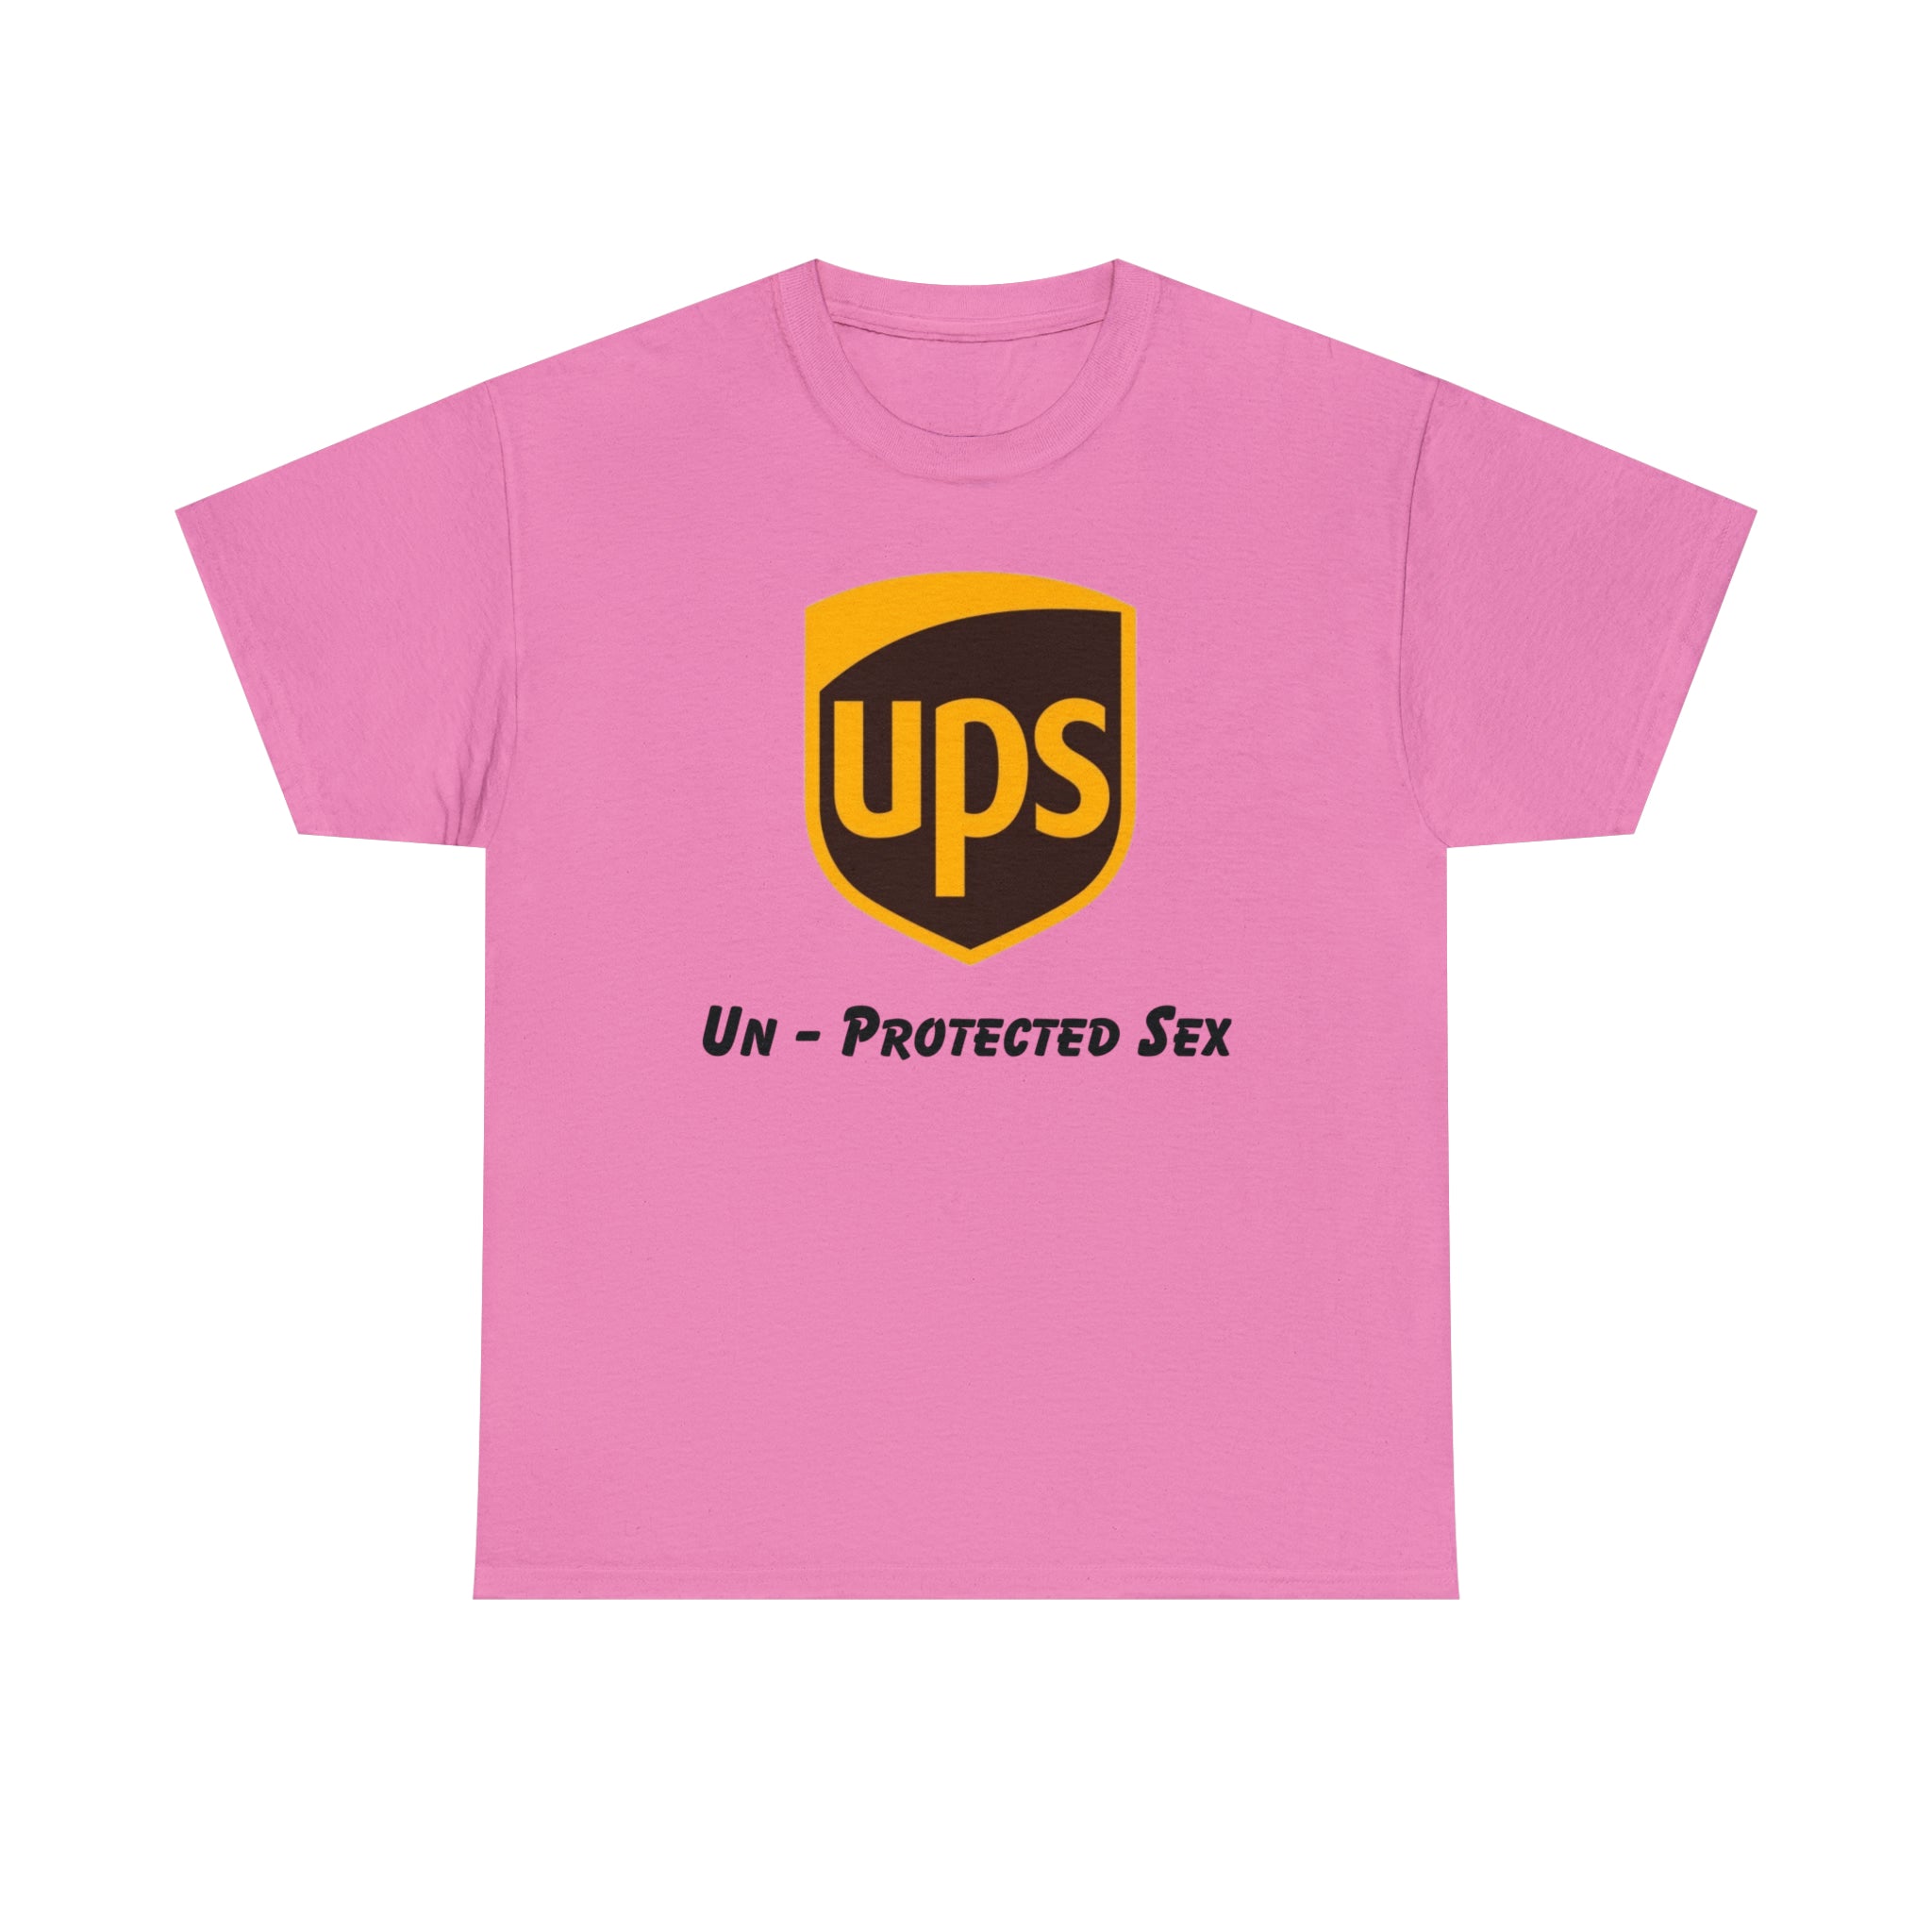 UPS (Un-Protected Sex)